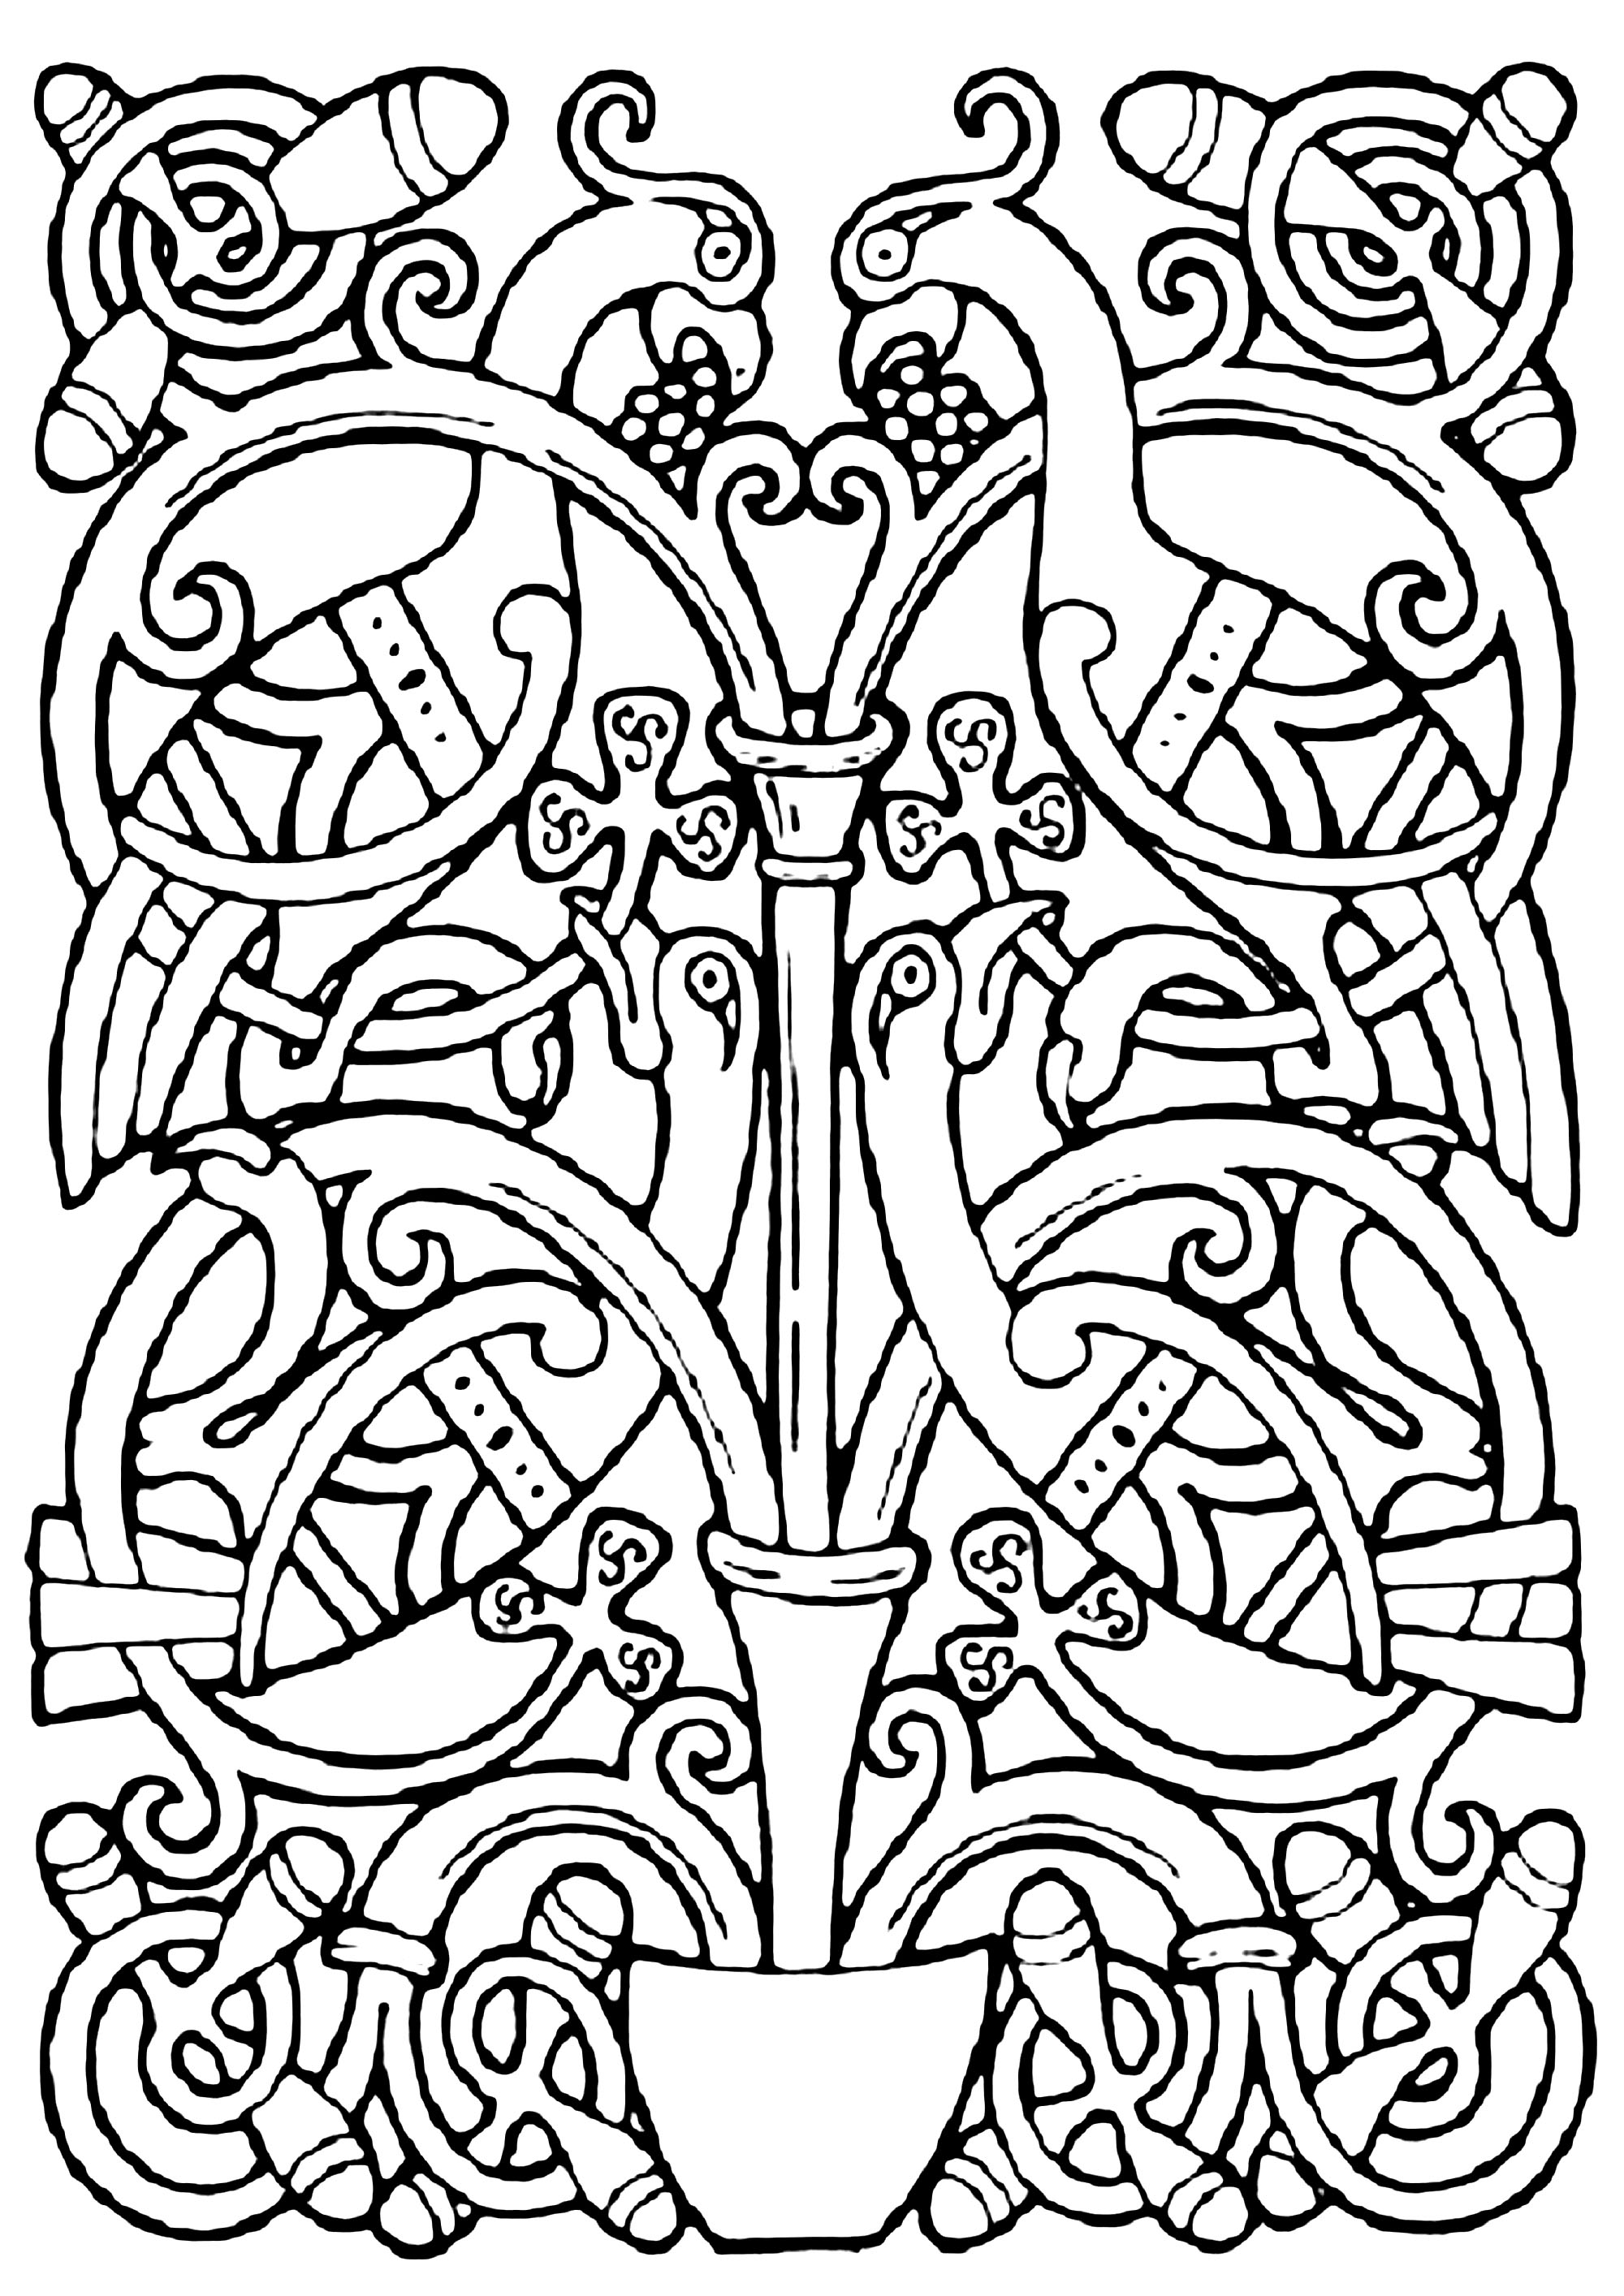 Dessin celtique représentant des oiseaux, avec des motifs celtiques entrelacés. Cette illustration ressemble à celles qu'on peut retrouver dans des manuscrits médiévaux tels que The Book of Kells.